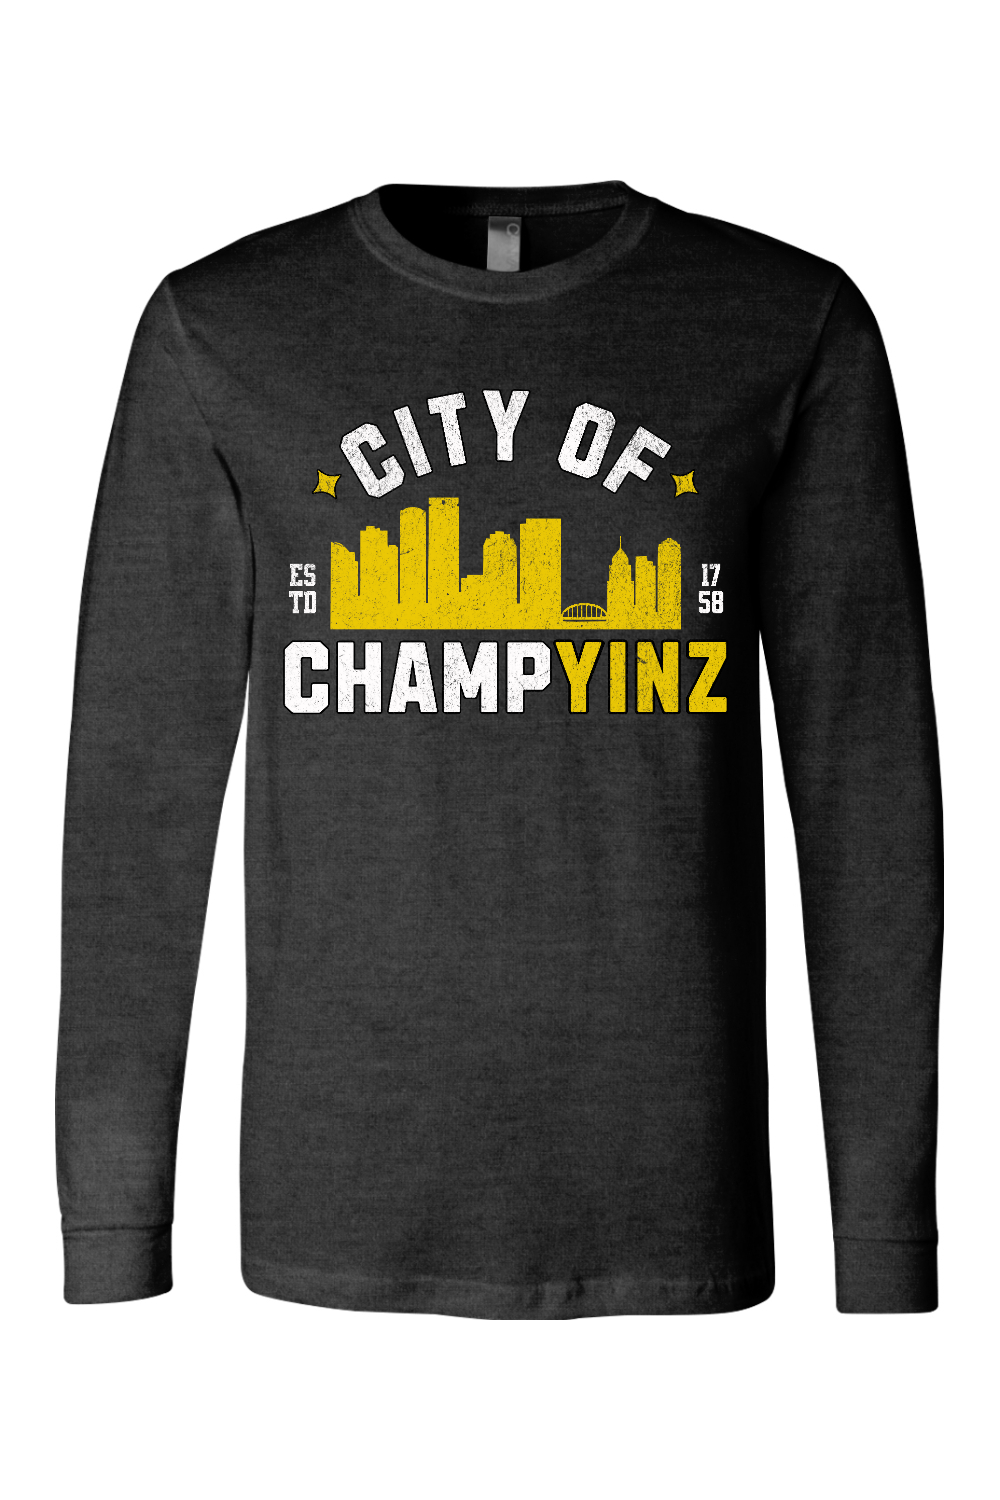 City of Champyinz Retro - Long Sleeve Tee - Yinzylvania